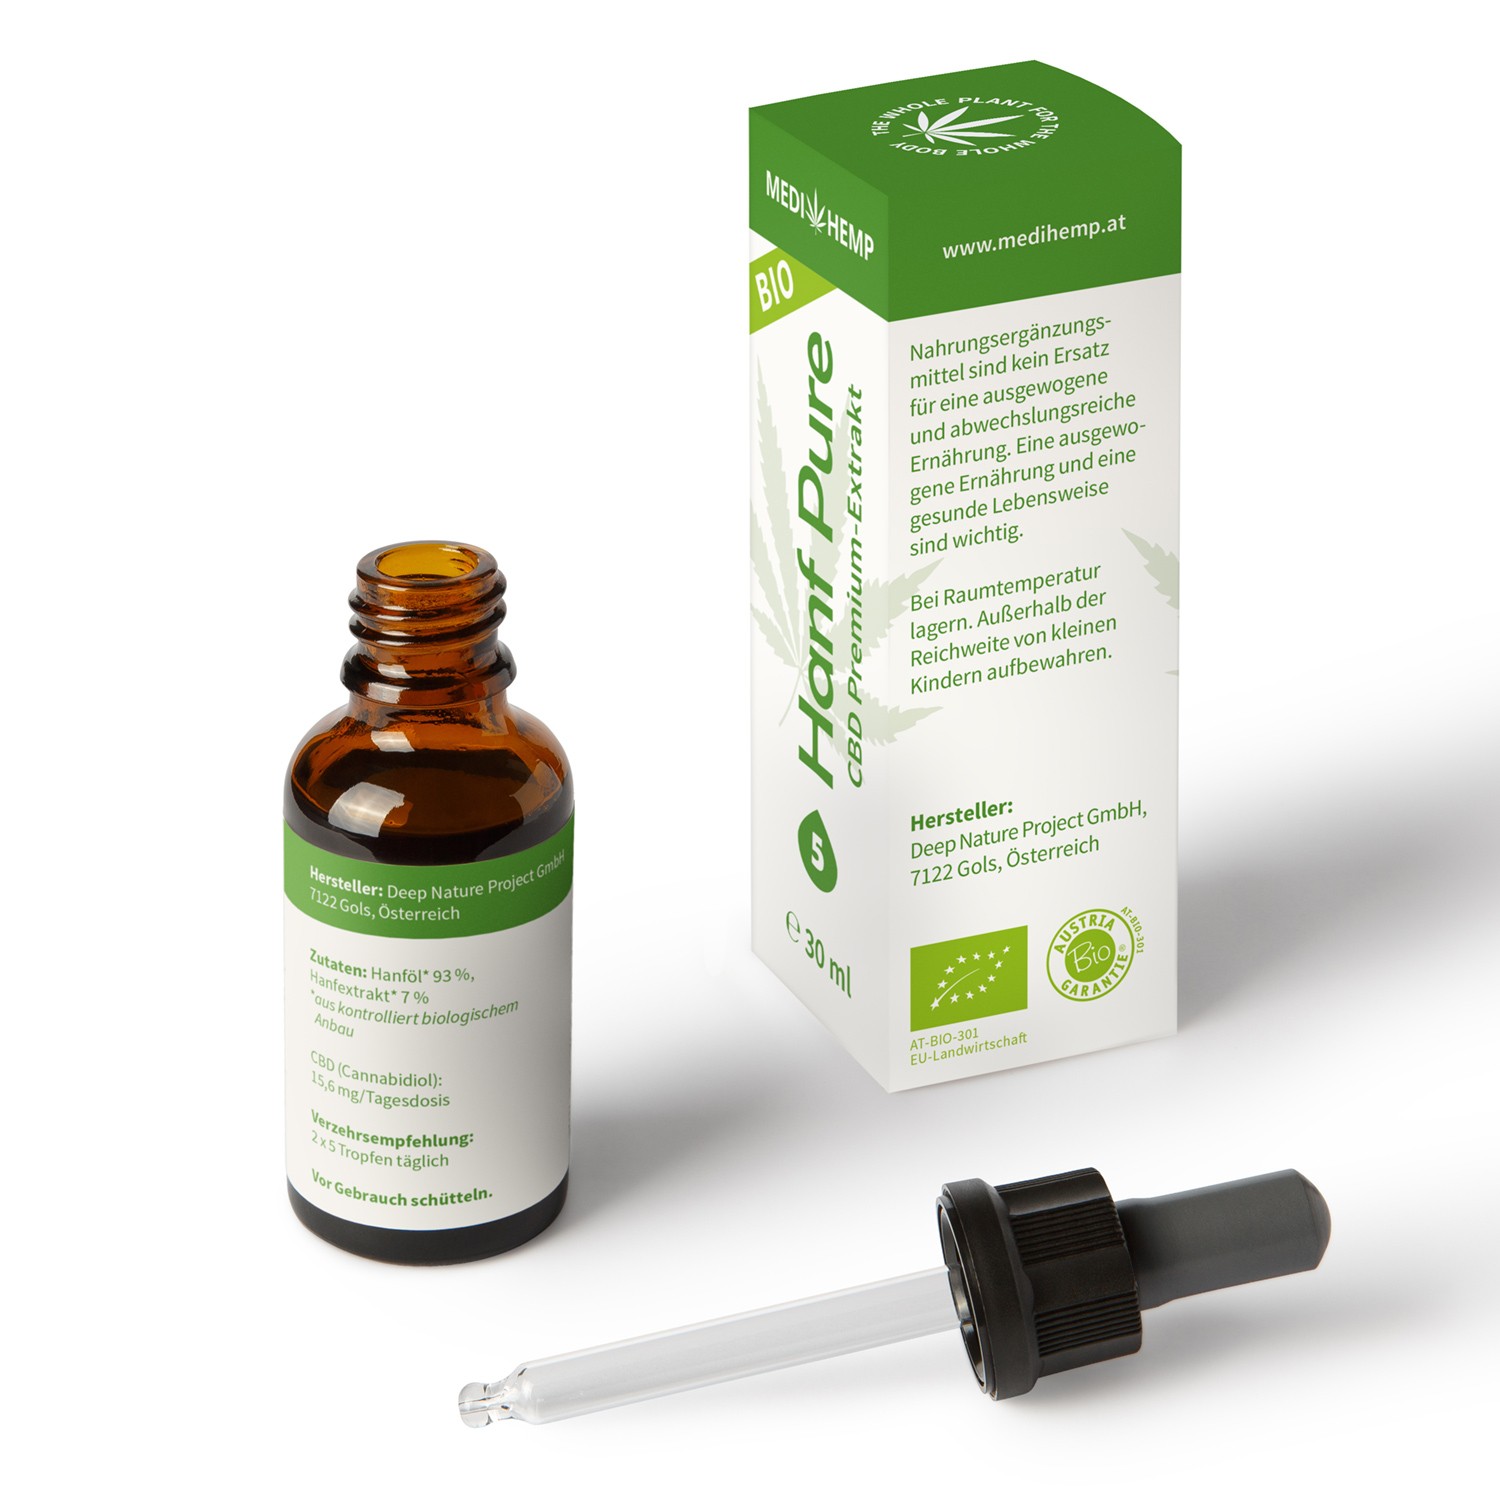 Medihemp Bio Hanf Pure Öl - 5 % -  30ml - 1500 mg CBD Aromaöl